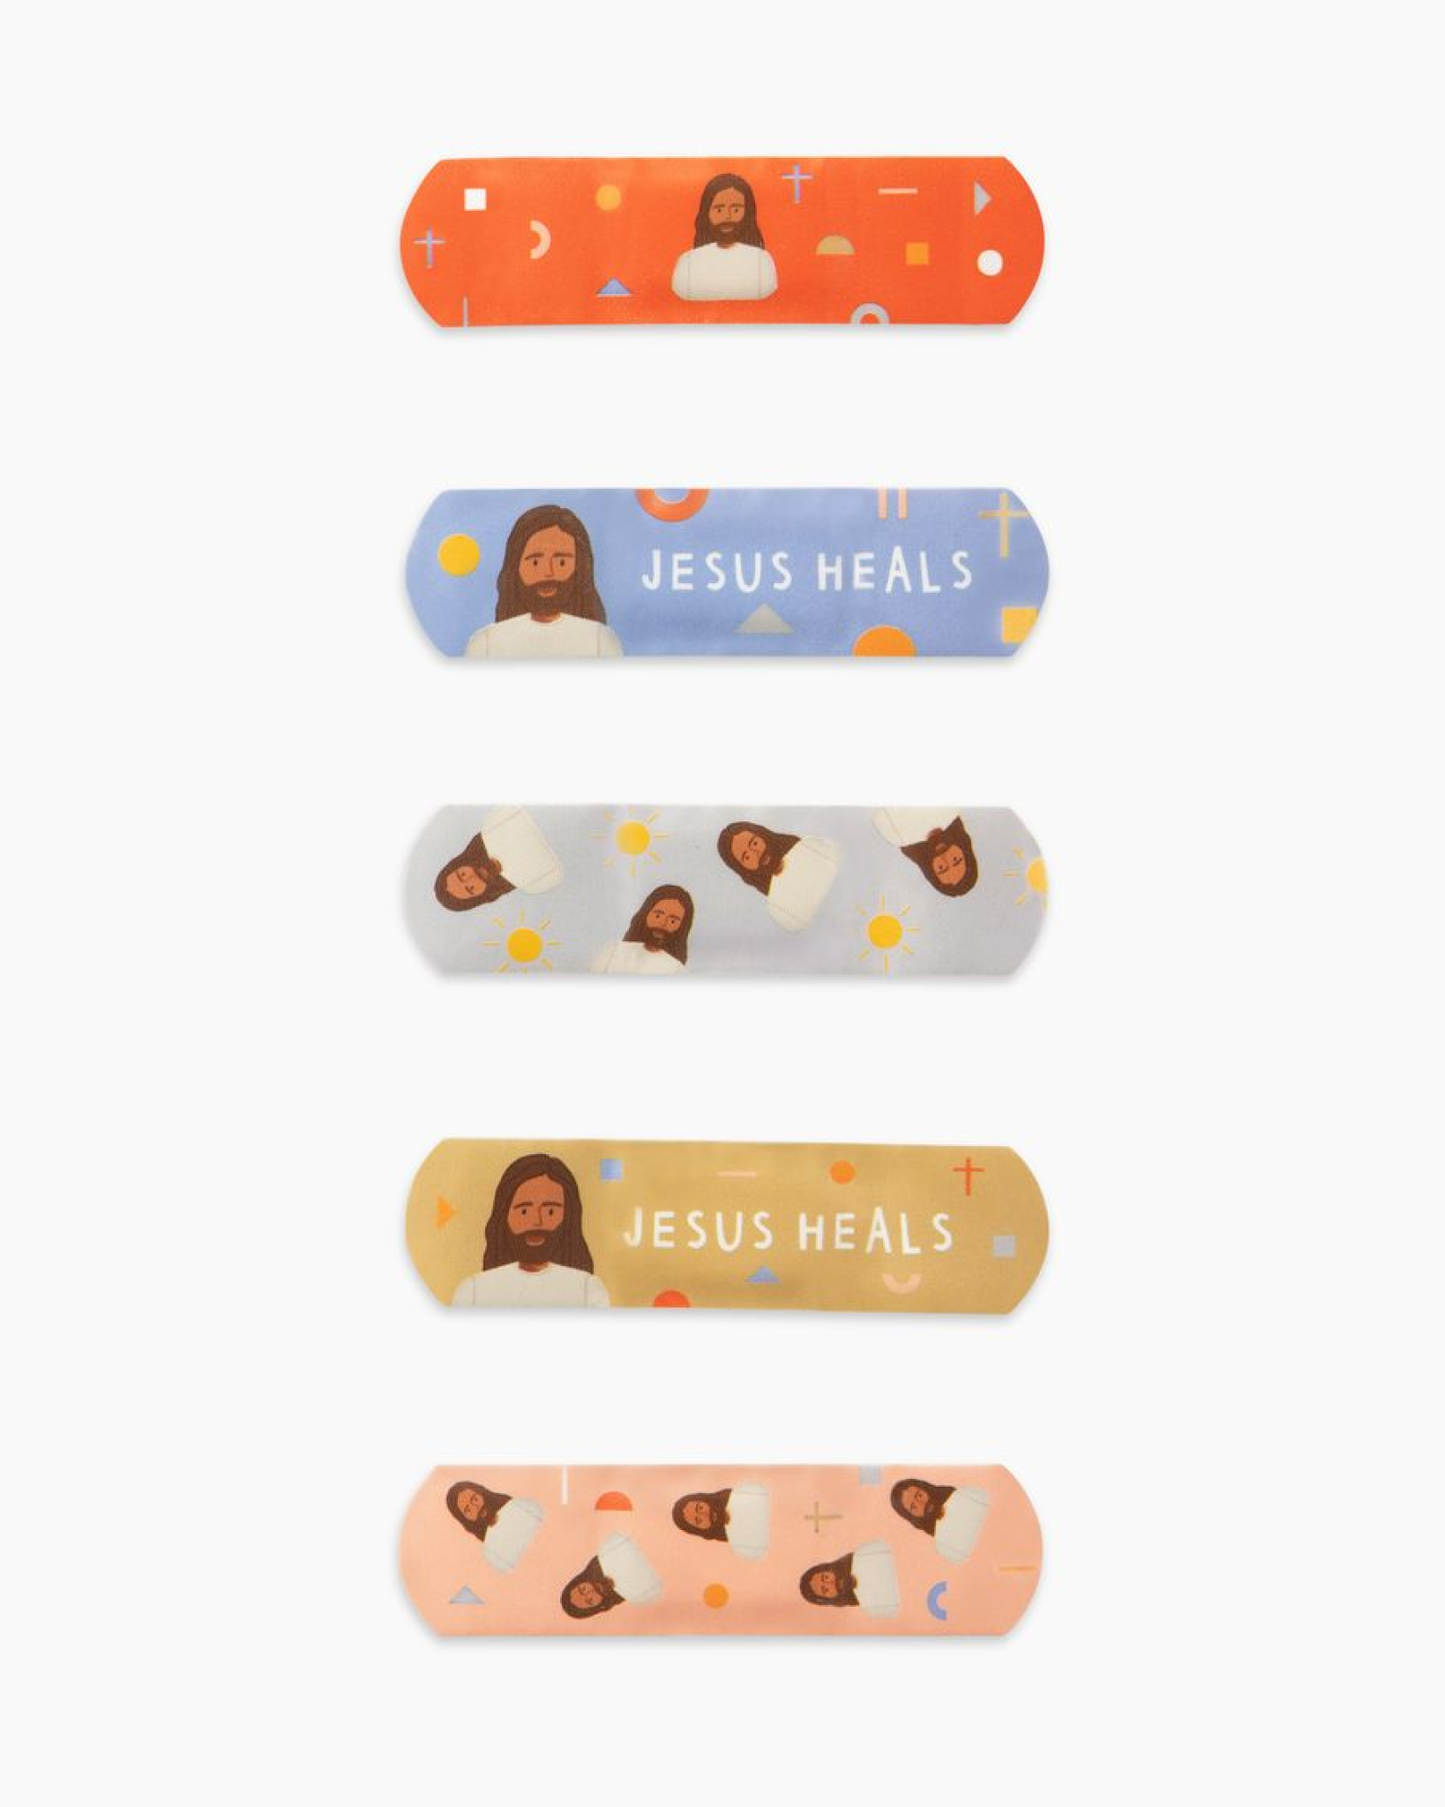 Jesus Heals Bandages: Jesus Heals Bandages